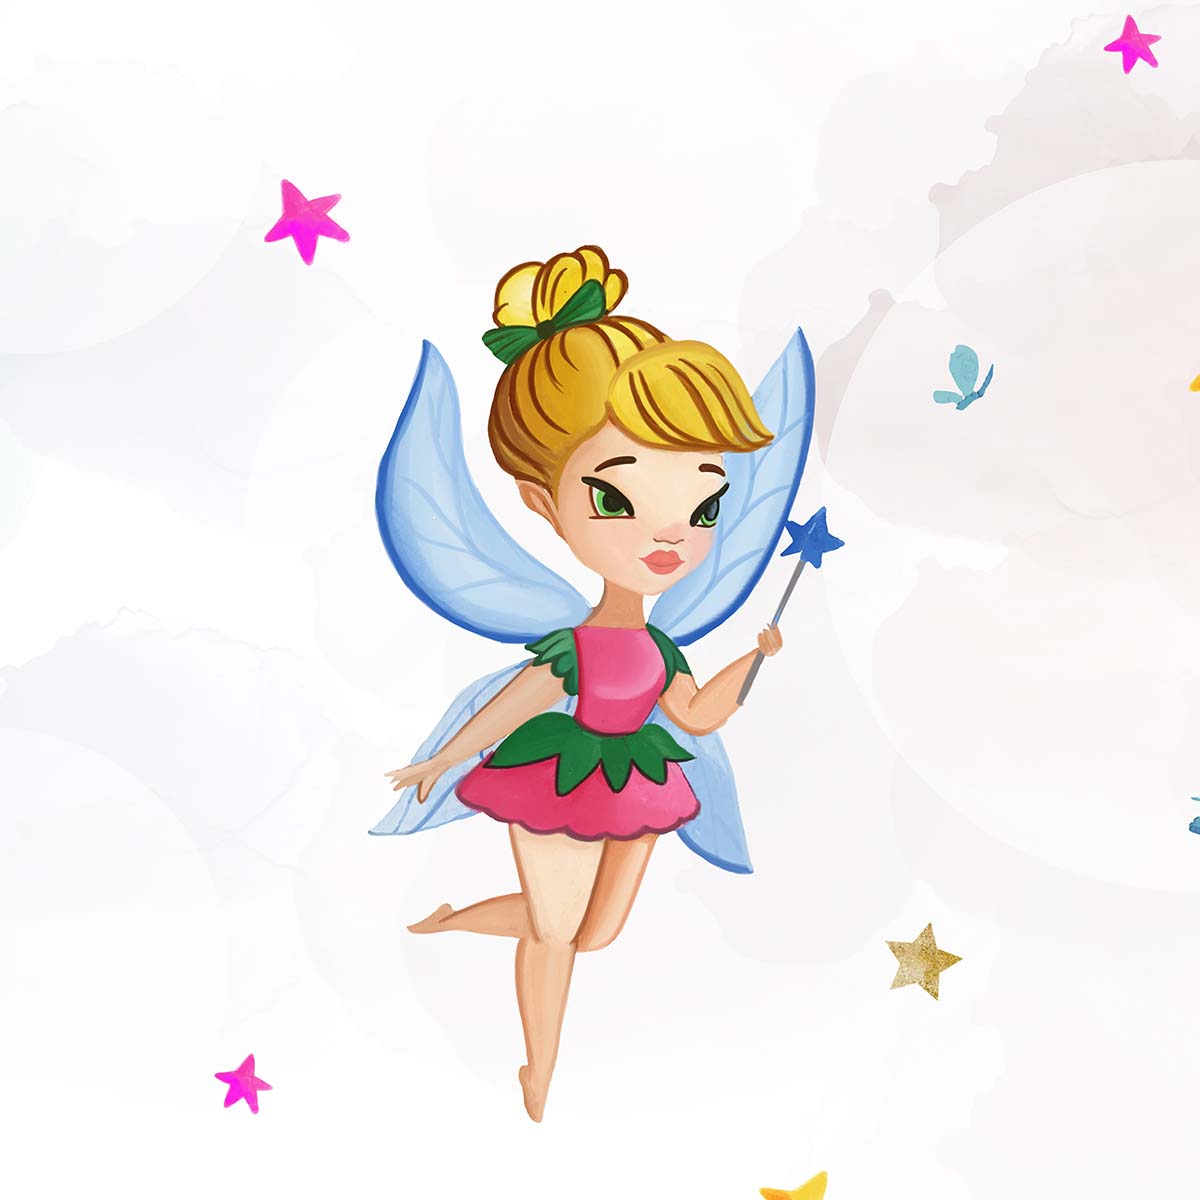 Customised Fairies Wallpaper Theme for Girls Room